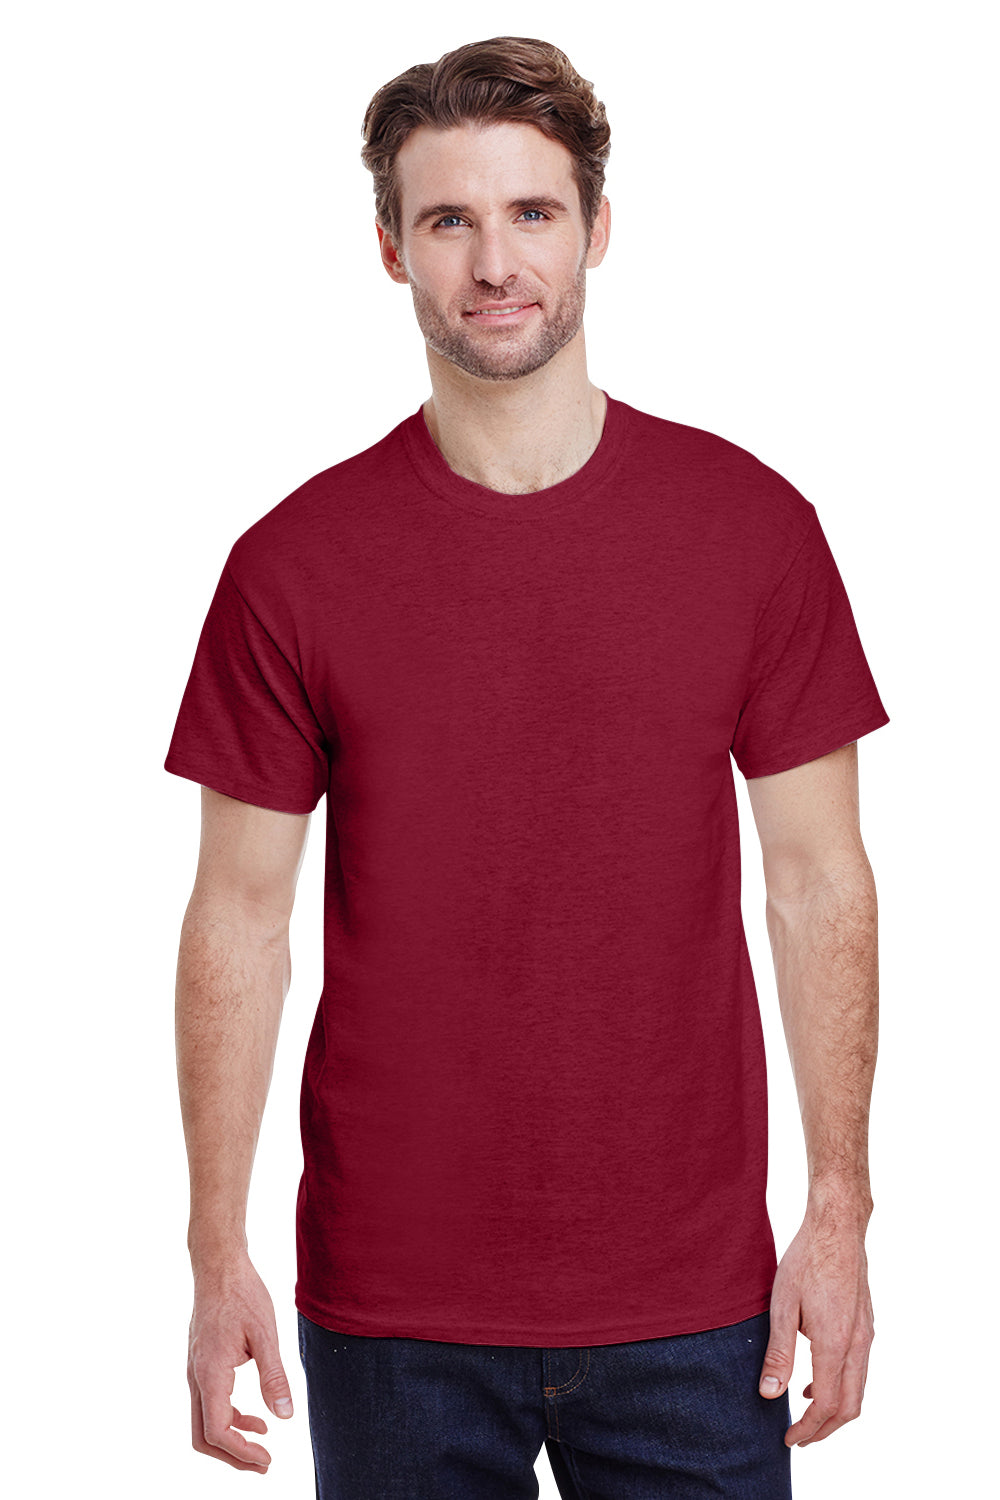 Gildan G200 Mens Ultra Short Sleeve Crewneck T-Shirt Antique Cherry Red Front